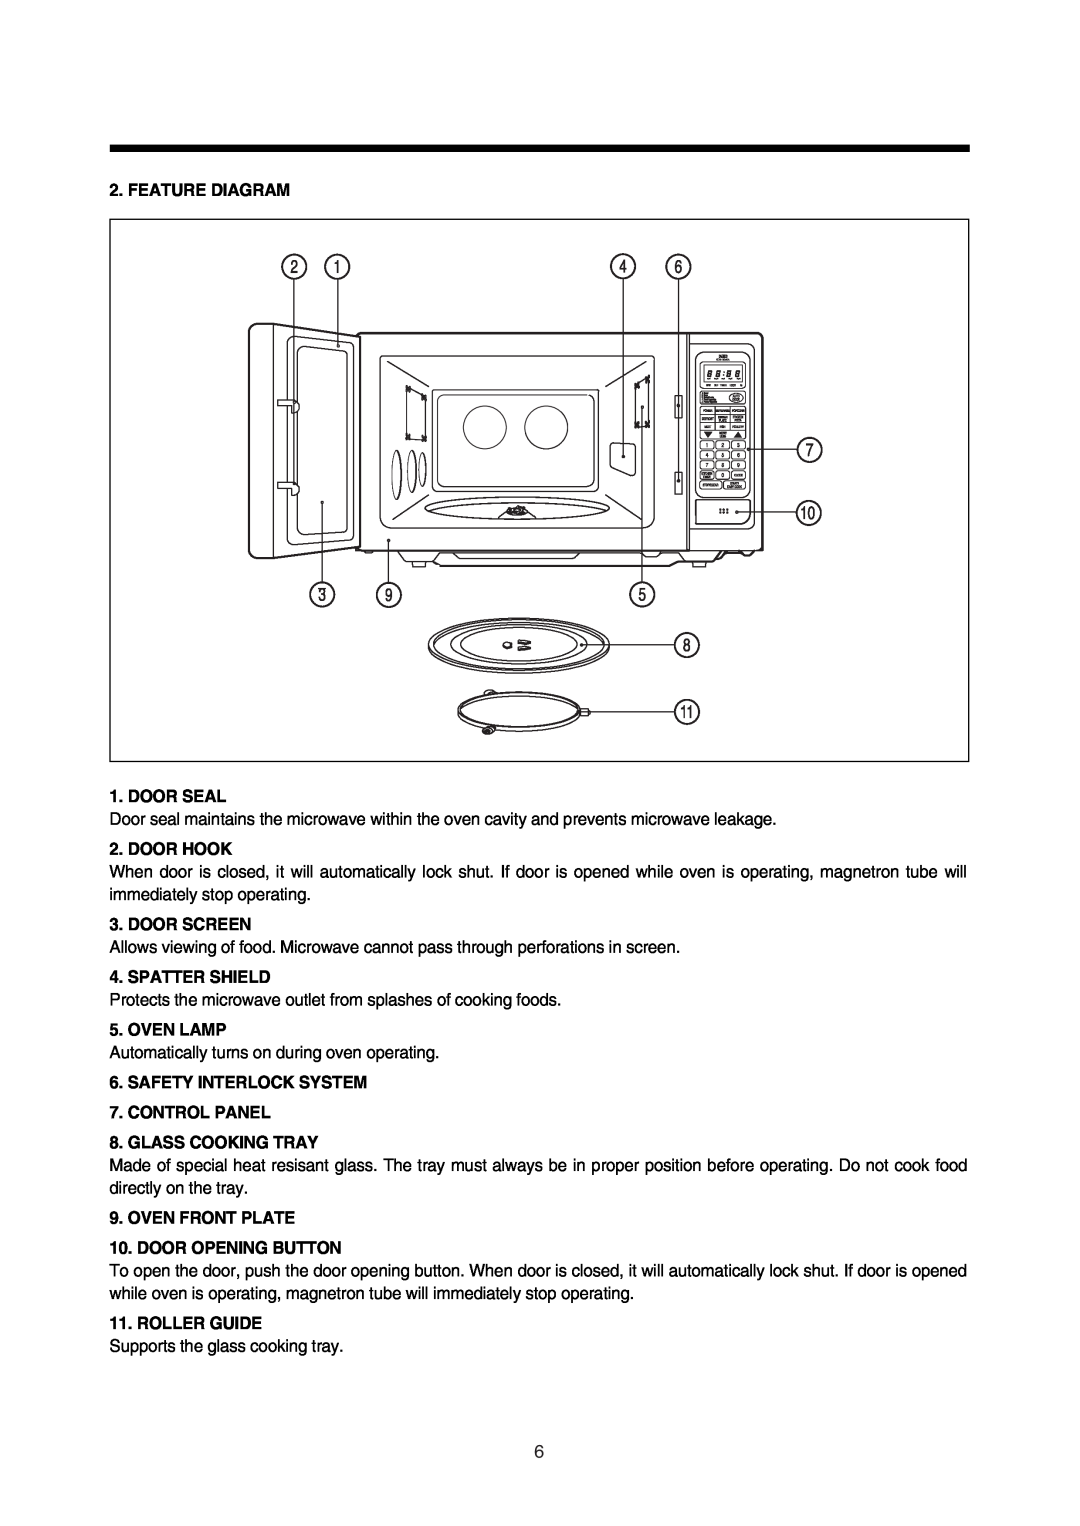 Daewoo 181GOA0A manual Feature Diagram, Door Seal, Door Hook, Door Screen, Spatter Shield, Oven Lamp, Roller Guide 